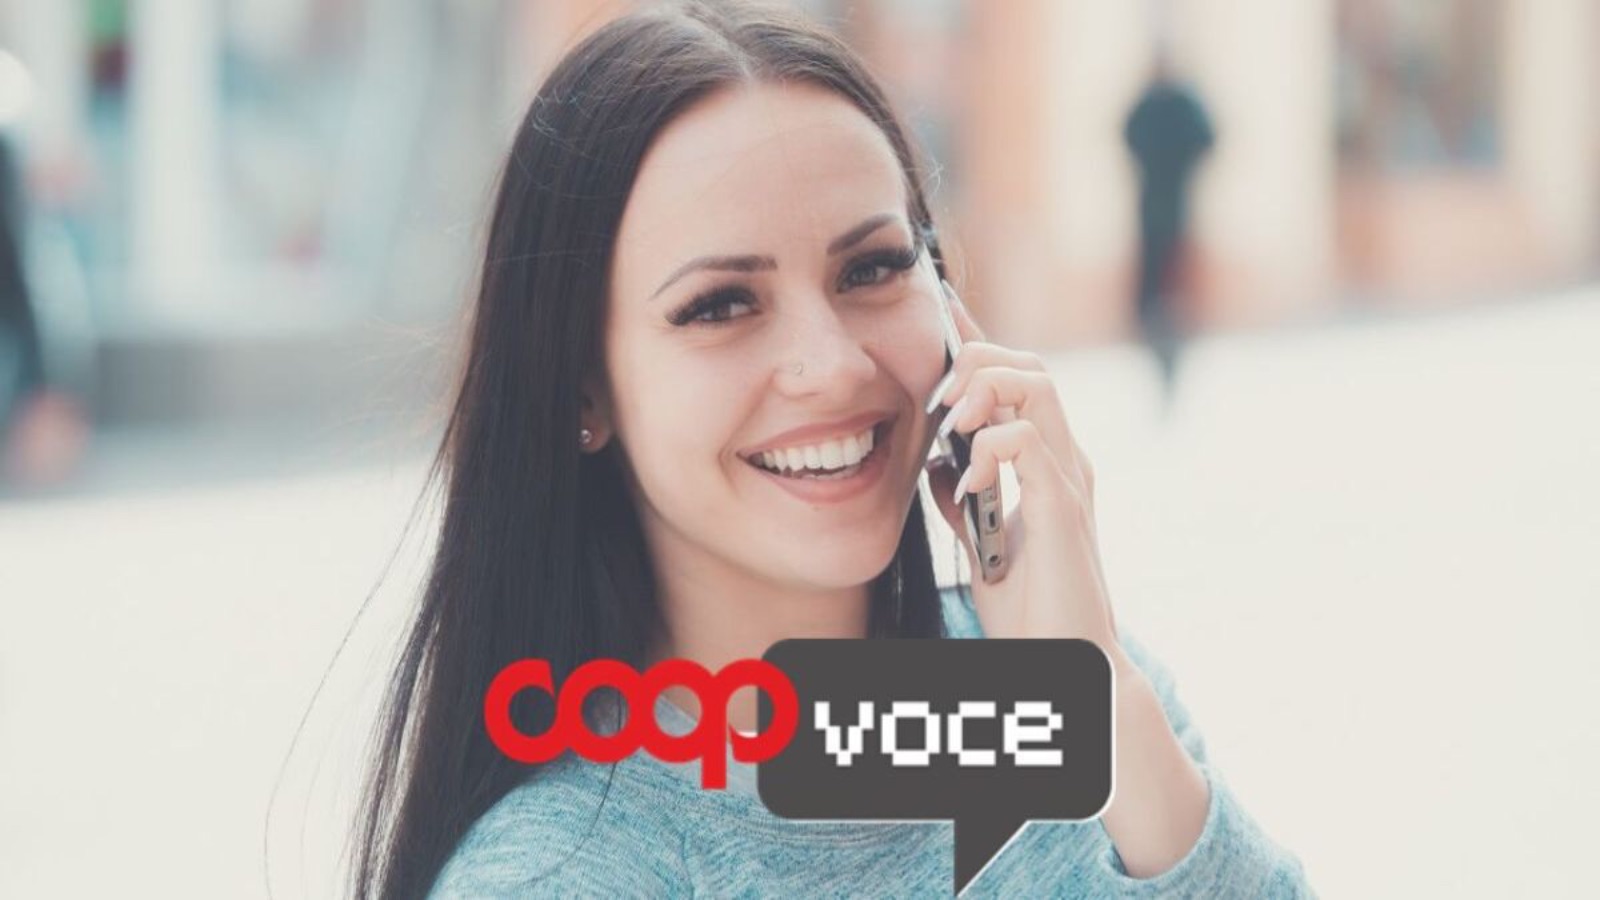 CoopVoce VINCE, Vodafone perde utenti con l'arrivo della EVO 200